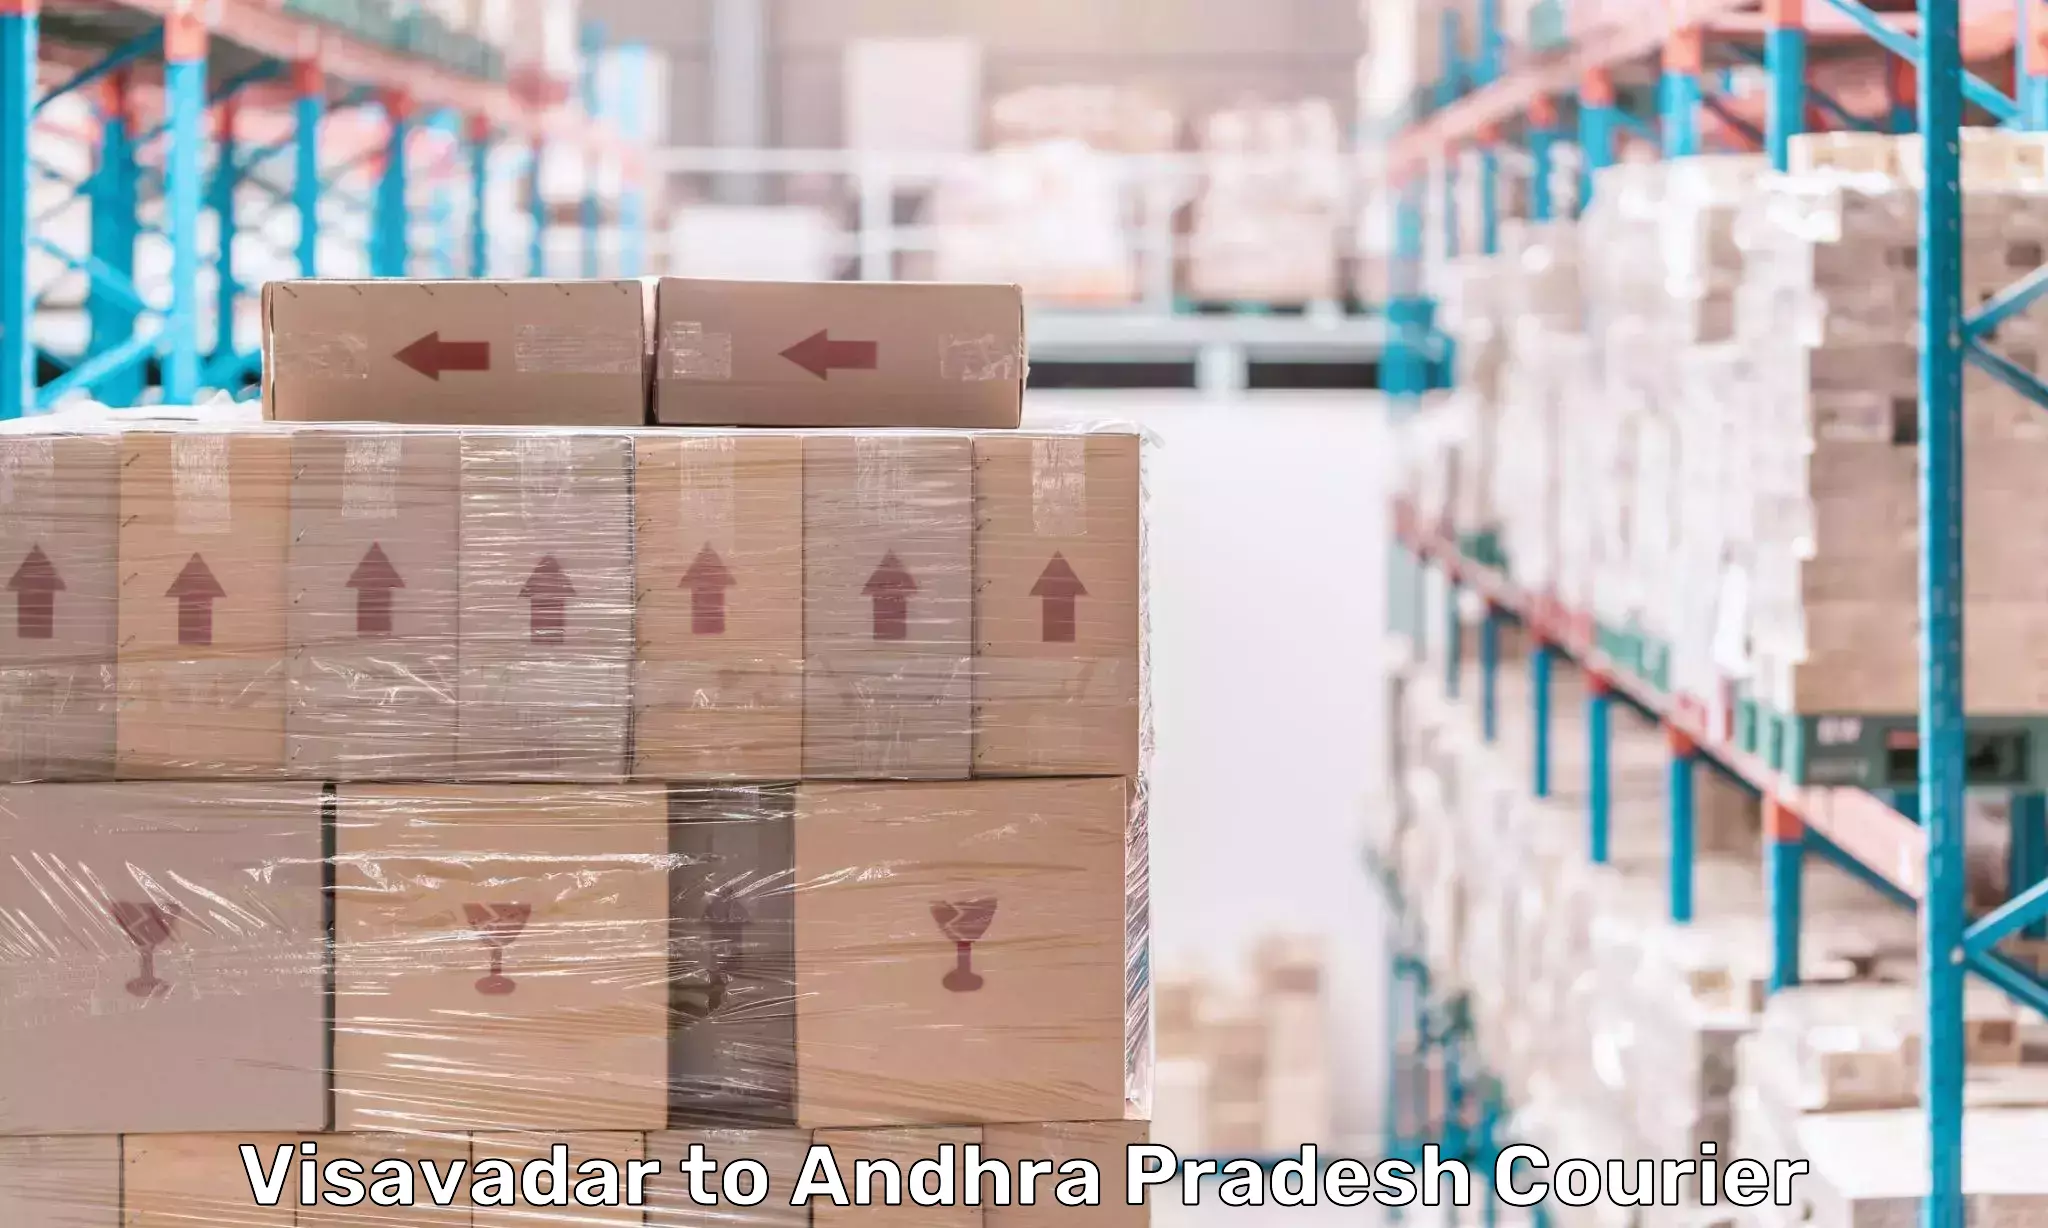 Cargo courier service Visavadar to Andhra Pradesh